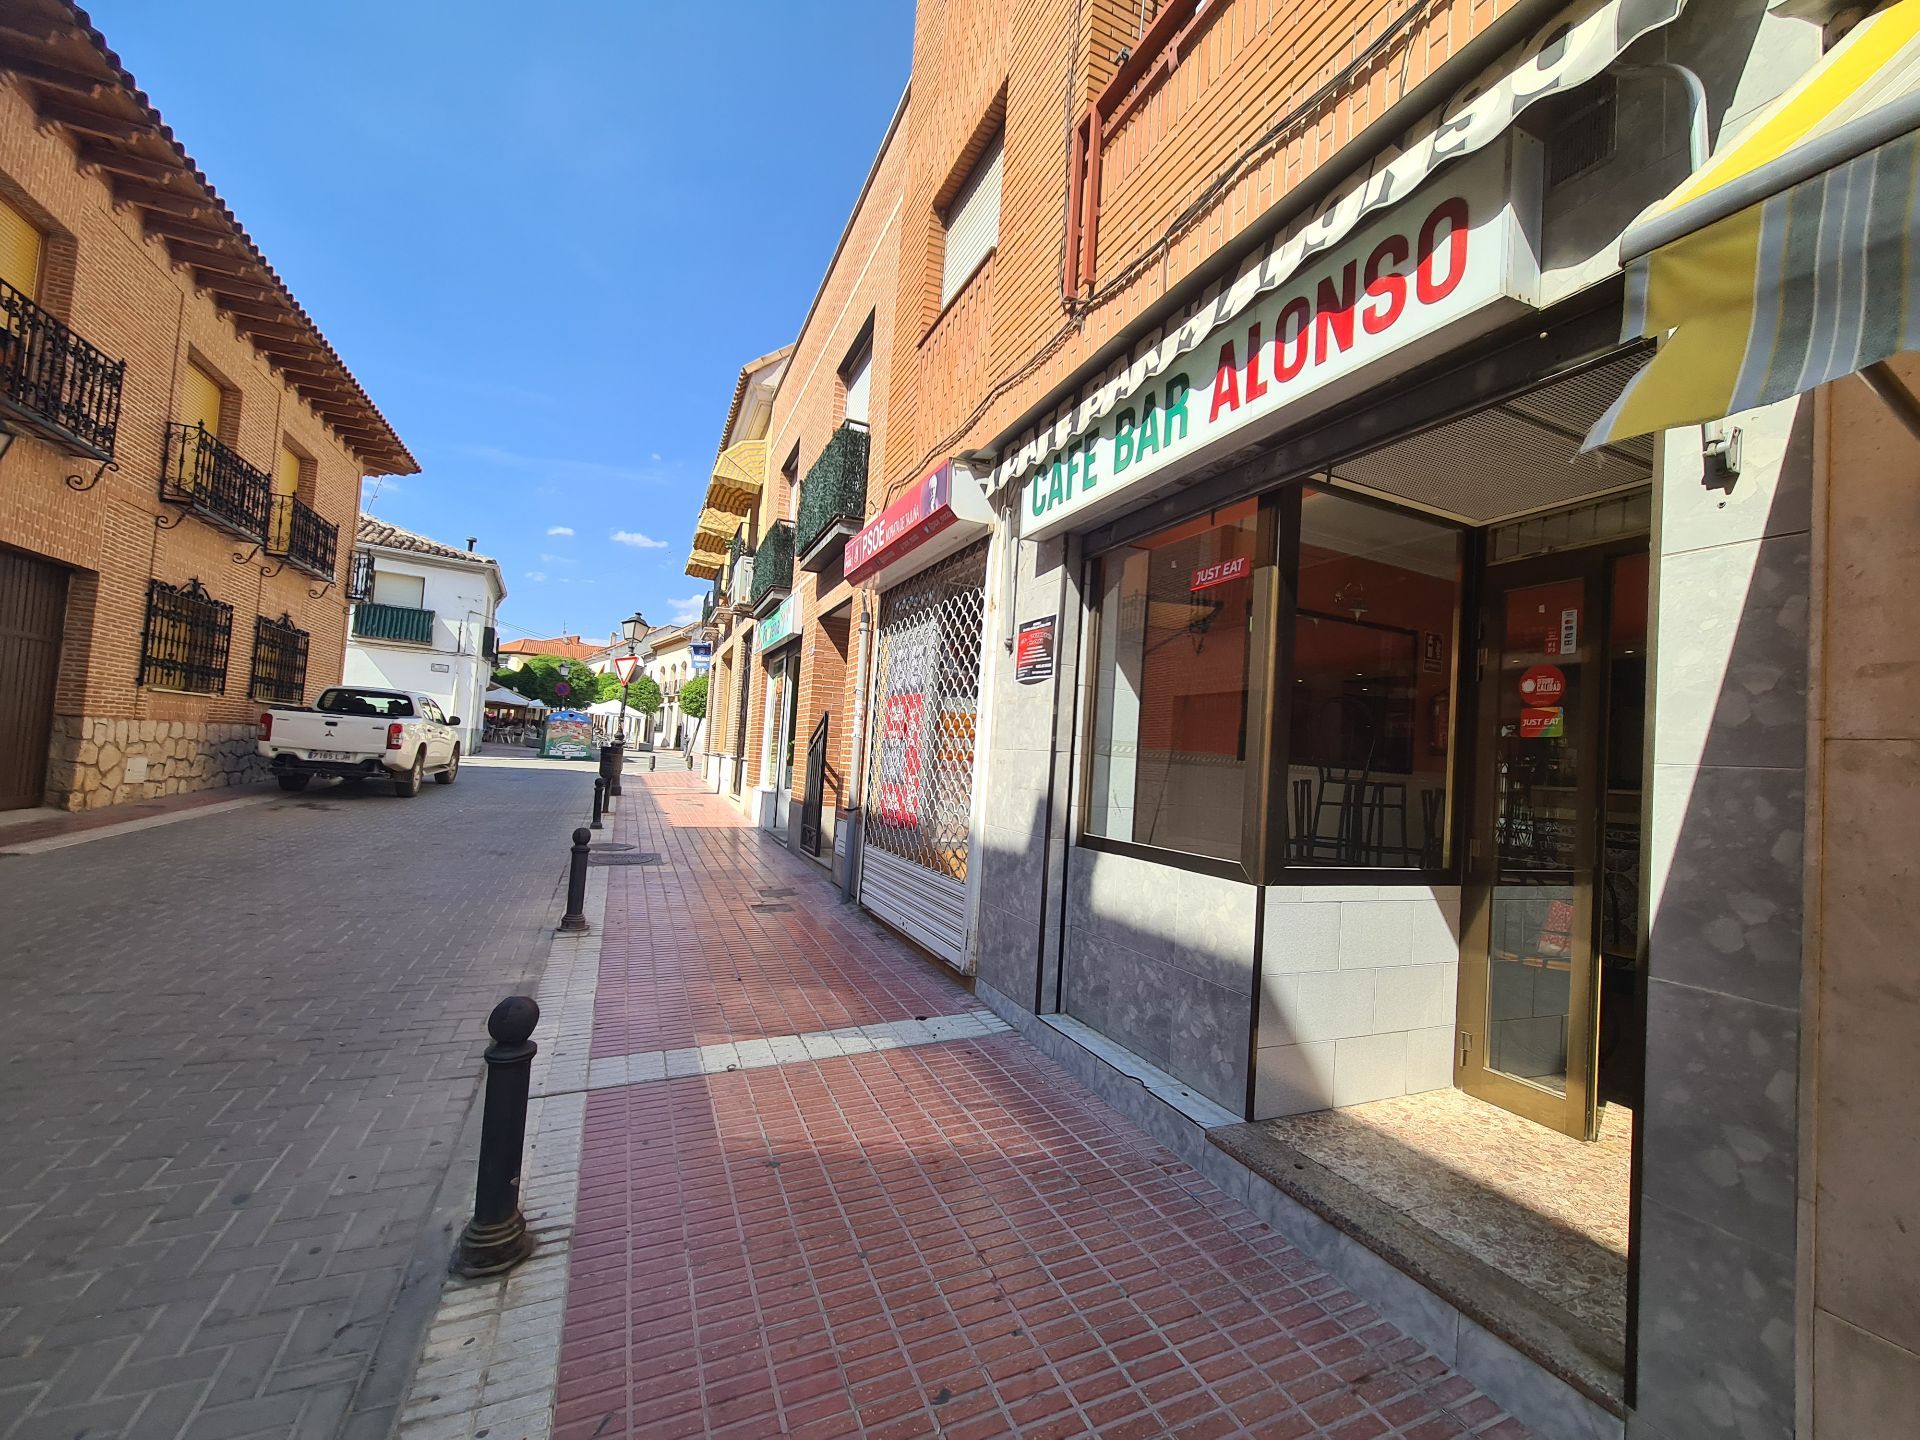 Local comercial en Morata de Tajuña, alquiler